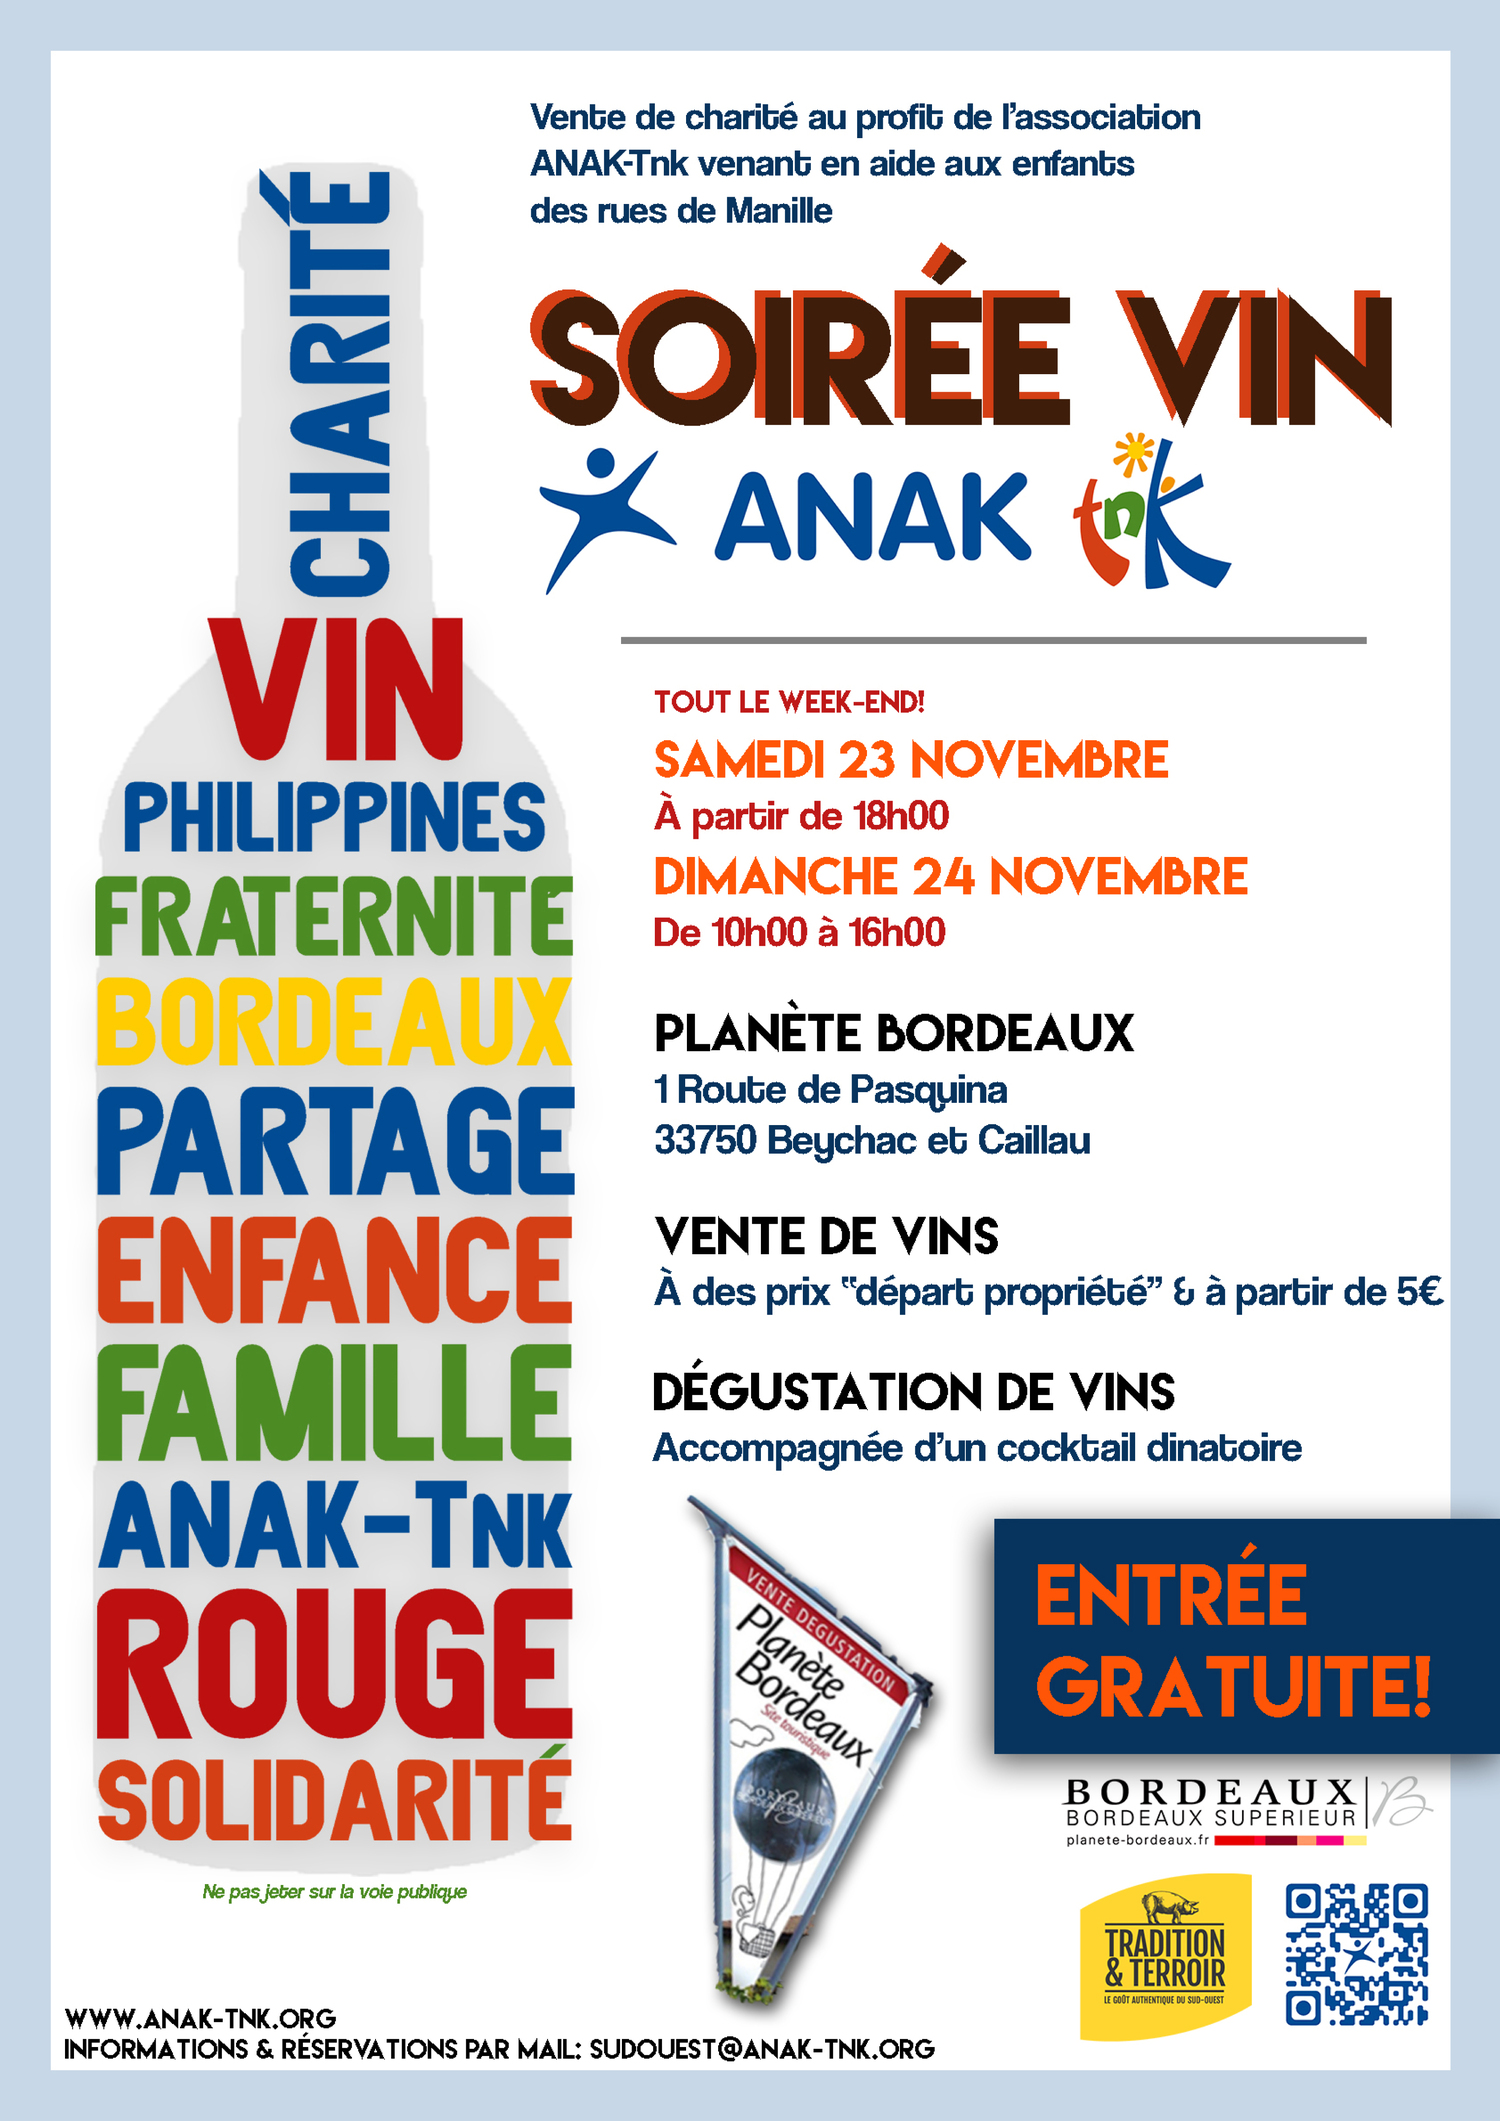 Vente de vin ANAK Tnk Bx 2019